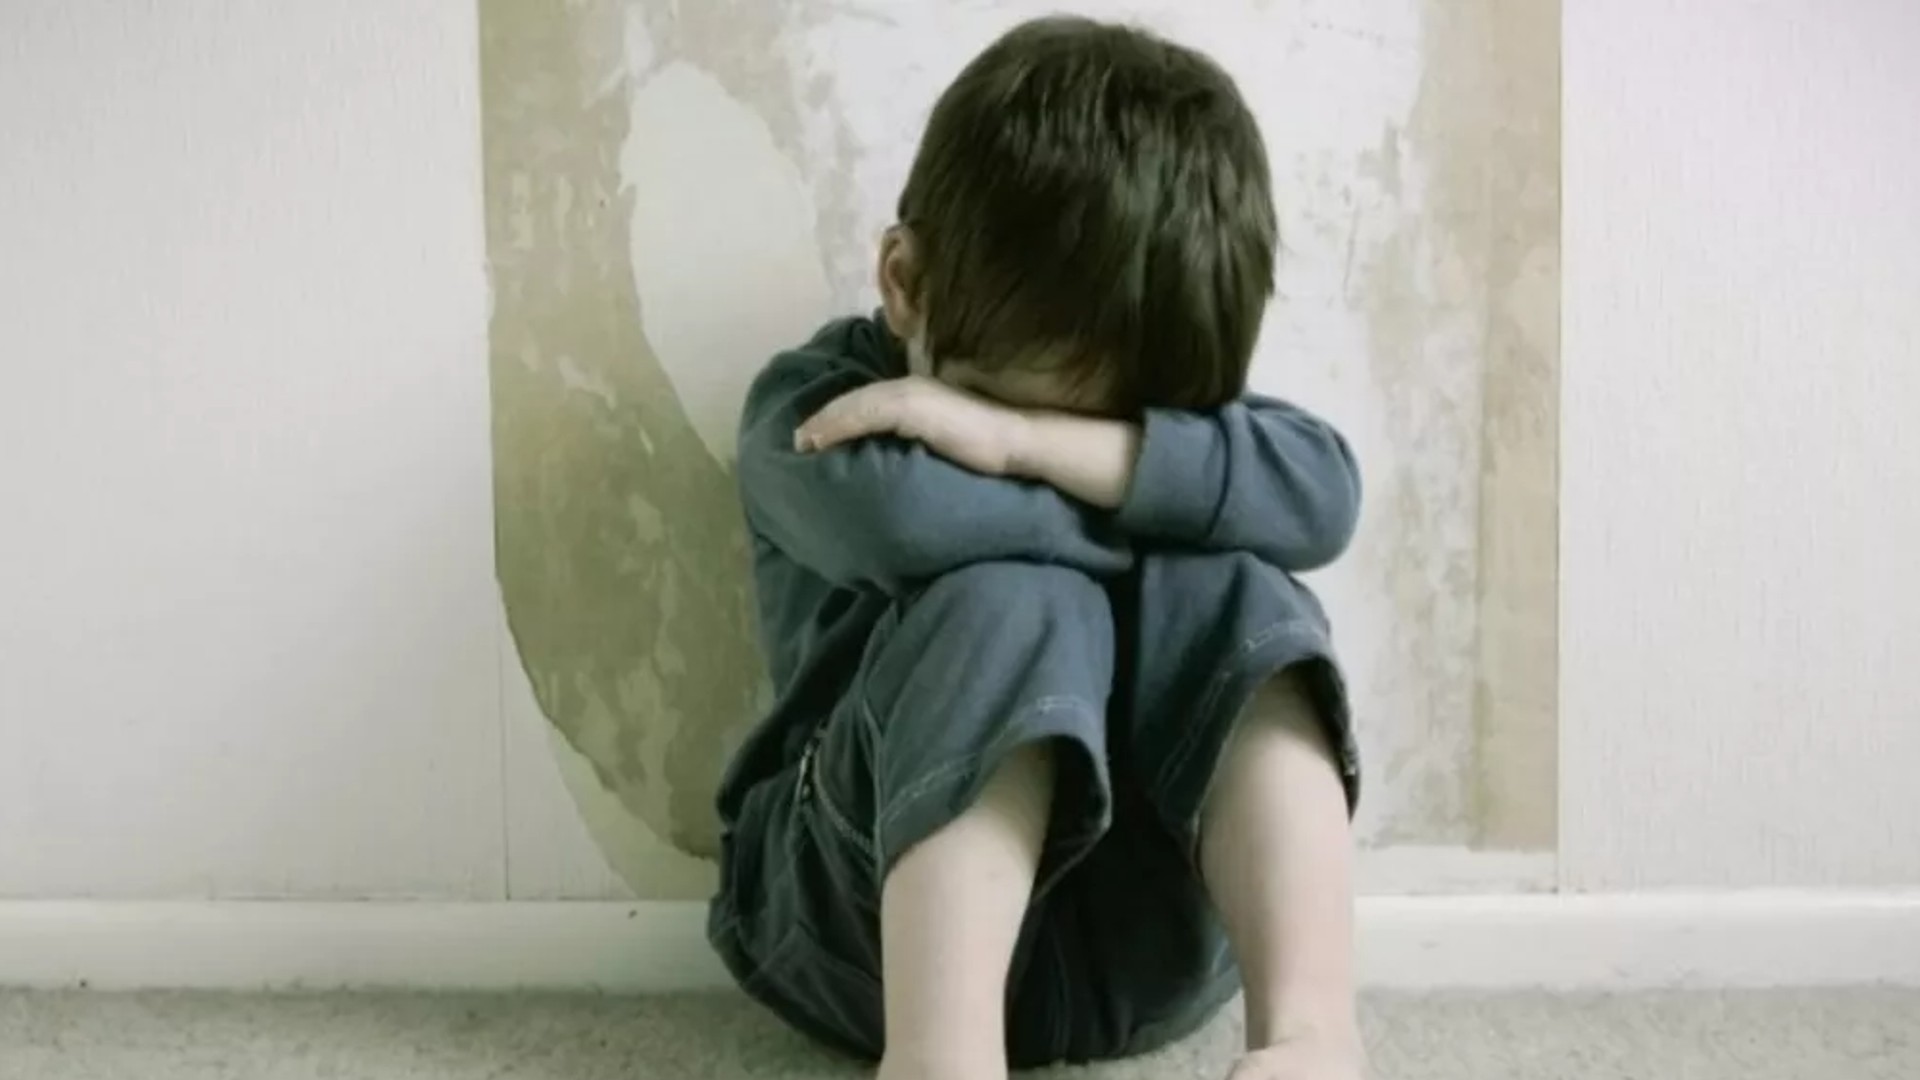 El estremecedor video que le dejó un nene de 10 años a su mamá antes de morir: “Todo te molestaba”